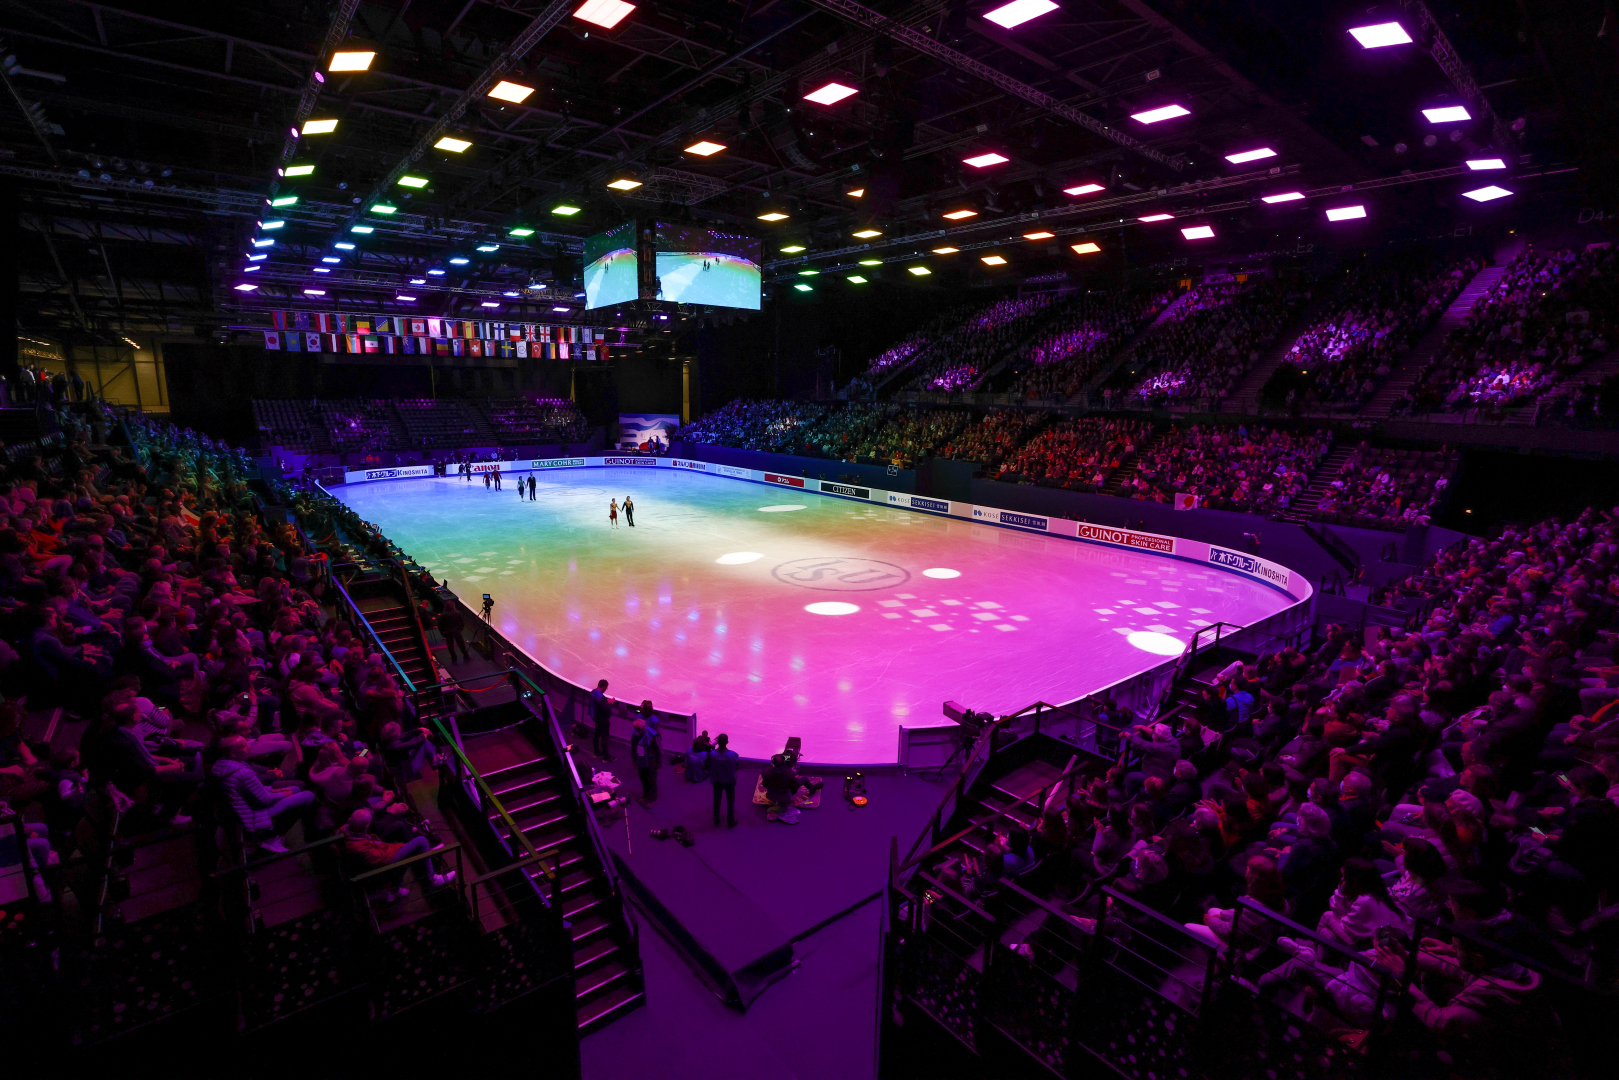 La piste de glace montée à l'Aréna pour les championnats du monde de patinage artistique en mars 2022